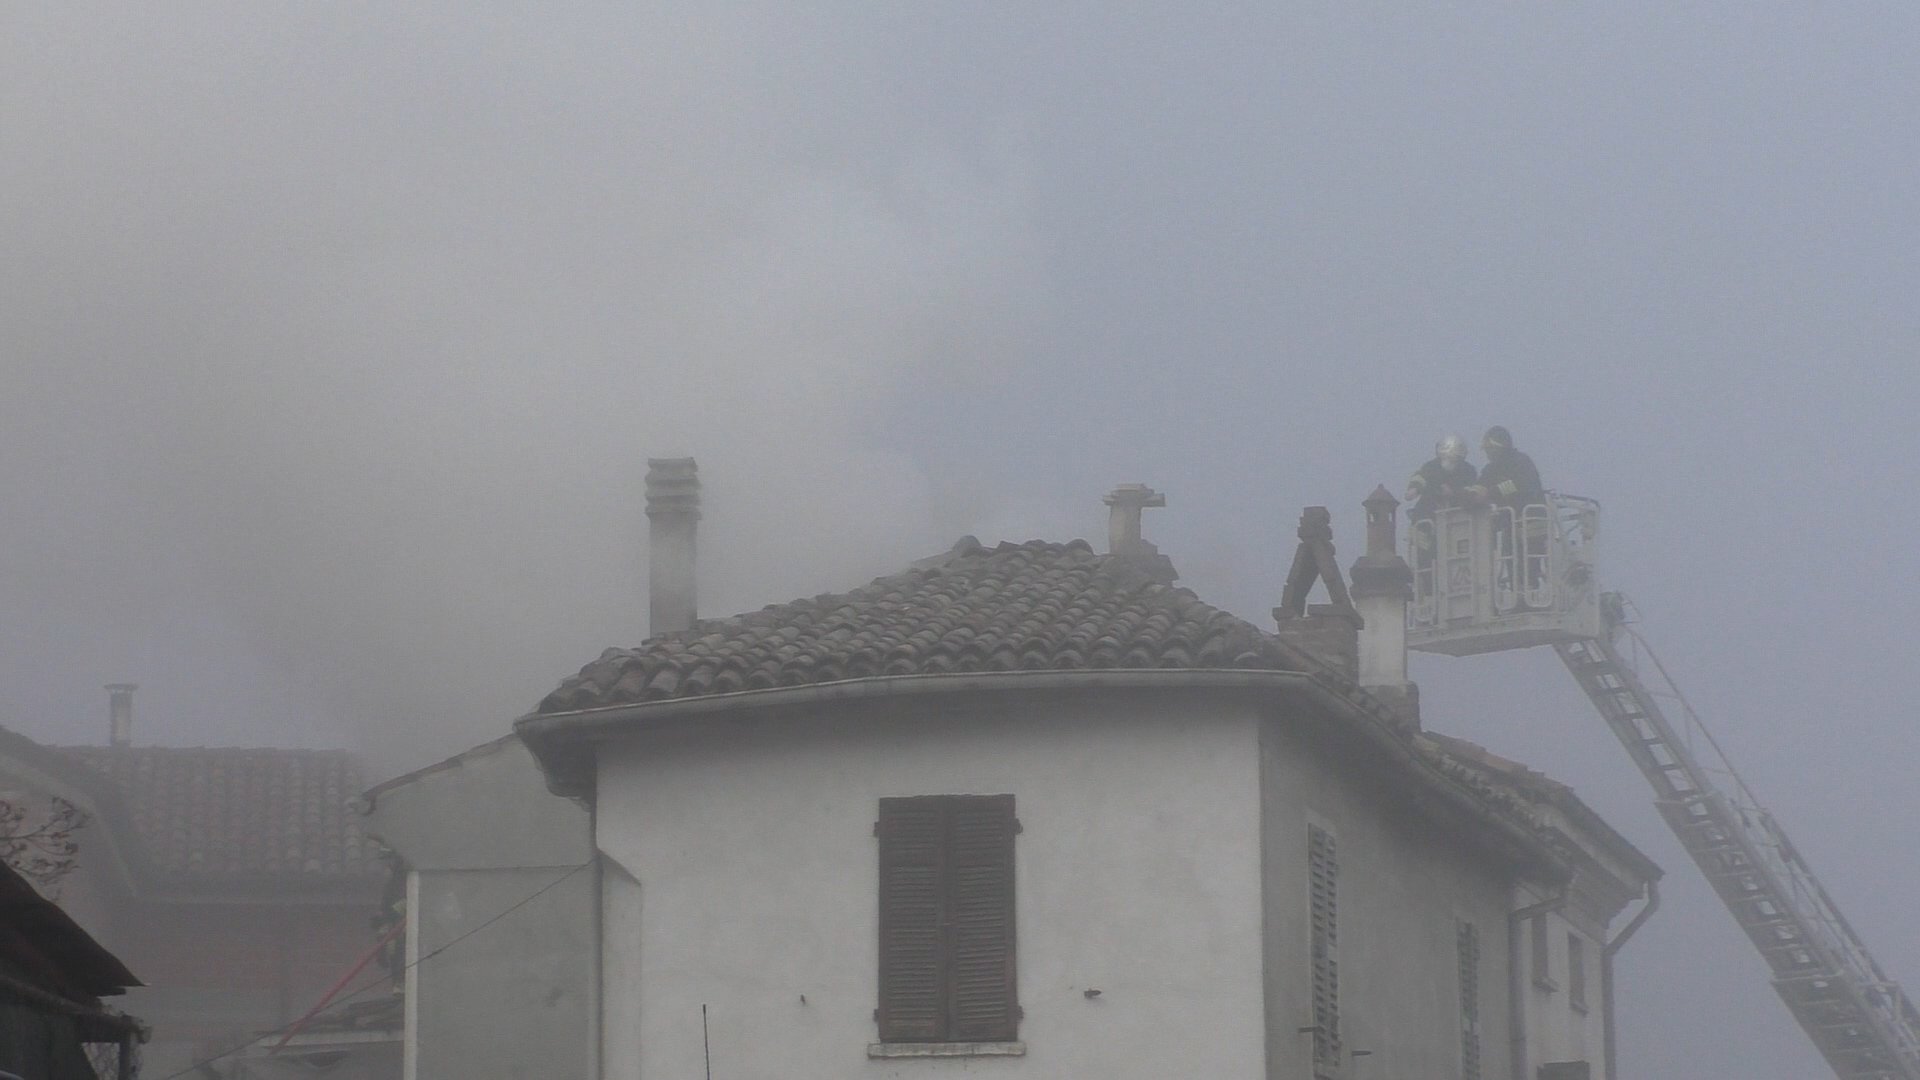 Esplosione a Montecastello, sindaco: “Boato incredibile, oltre a quella esplosa c’erano altre bombole”